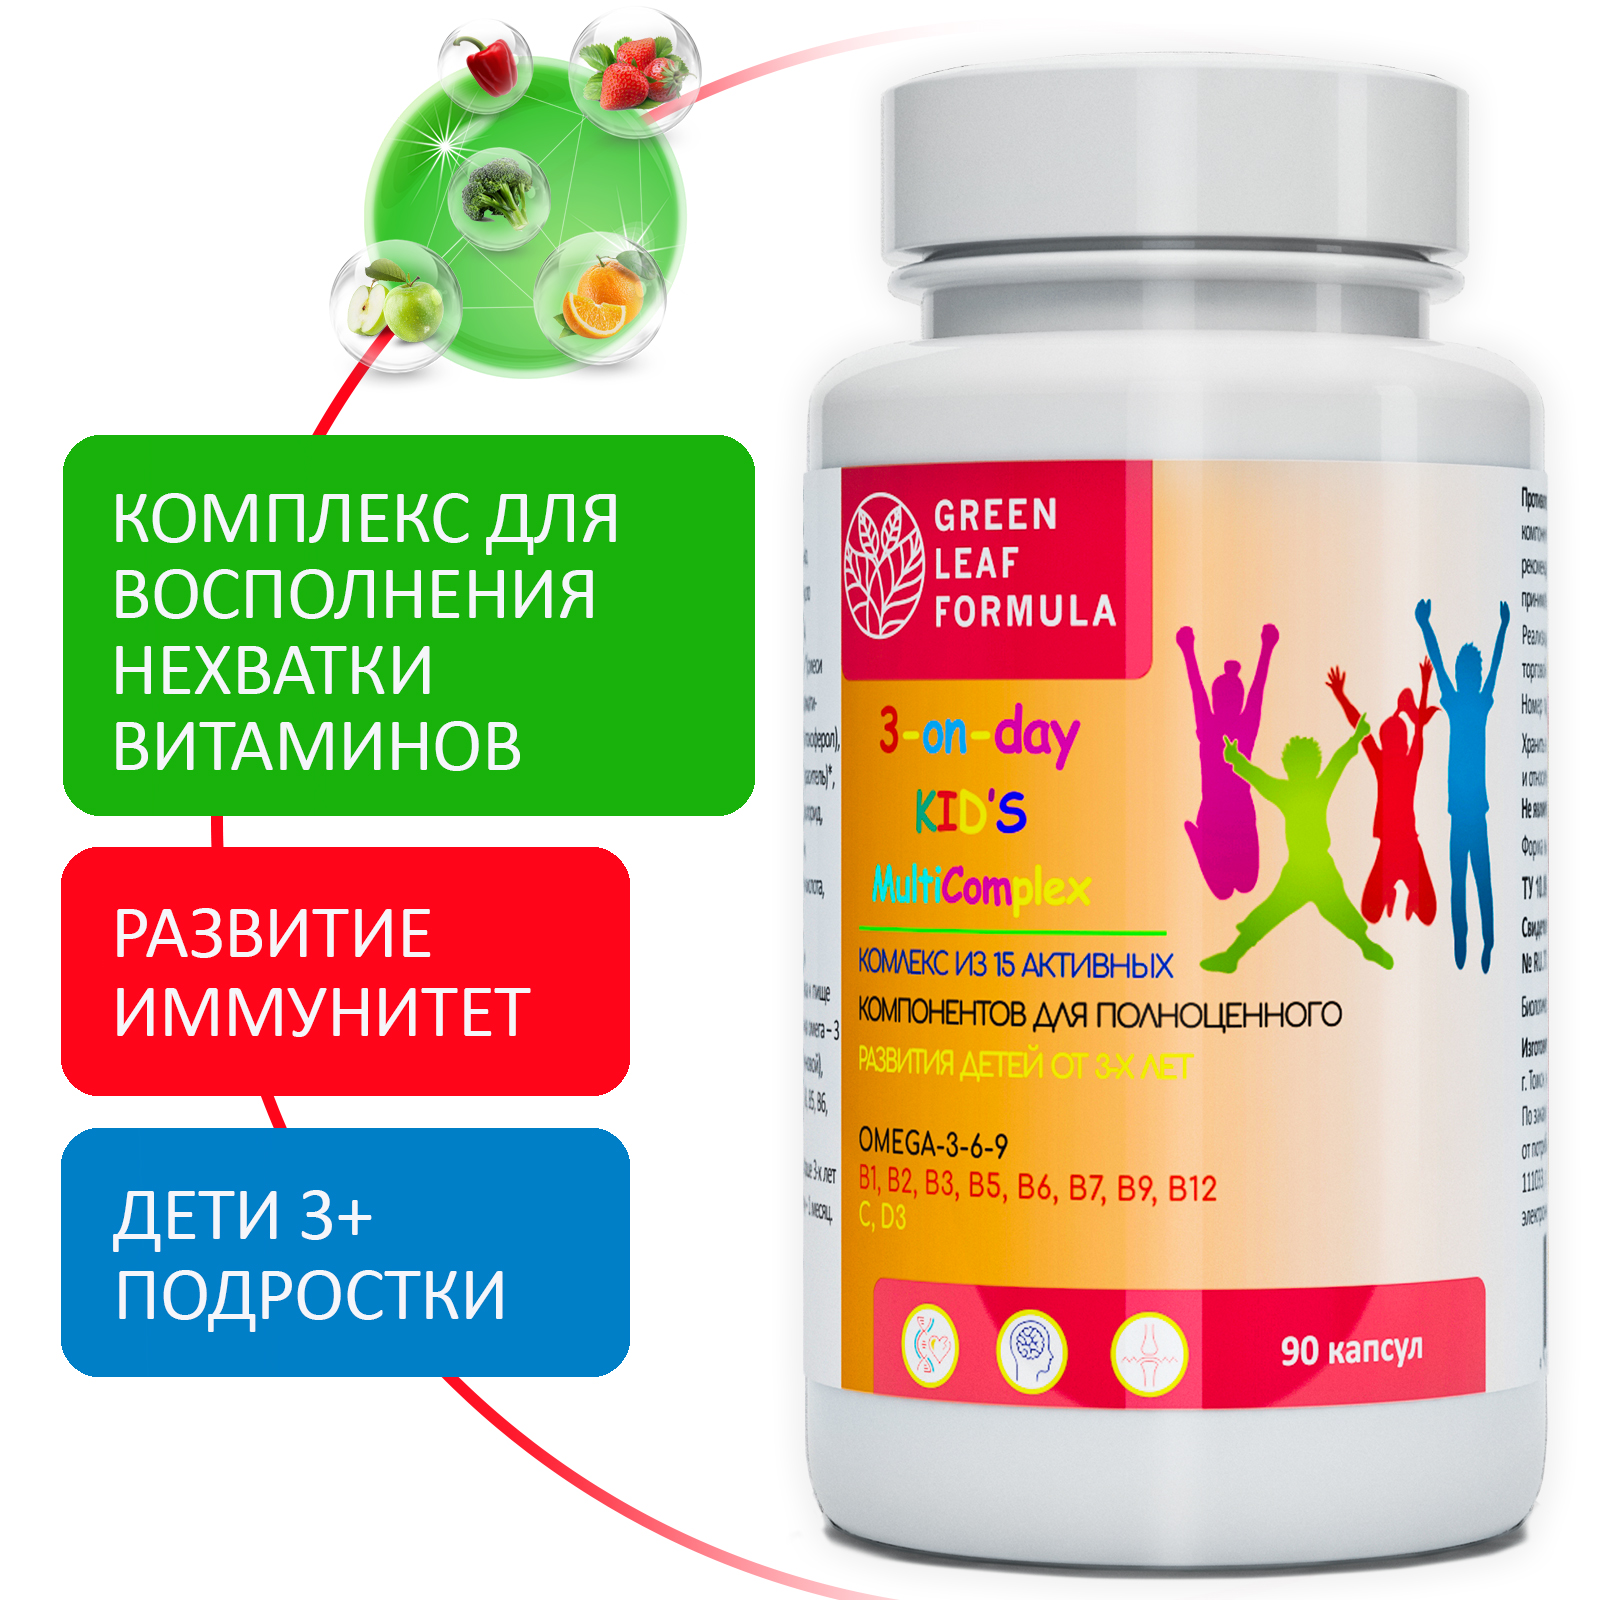 Детский пробиотик и витамины Green Leaf Formula мультивитамины для детей от 3 лет для иммунитета для кишечника - фото 11